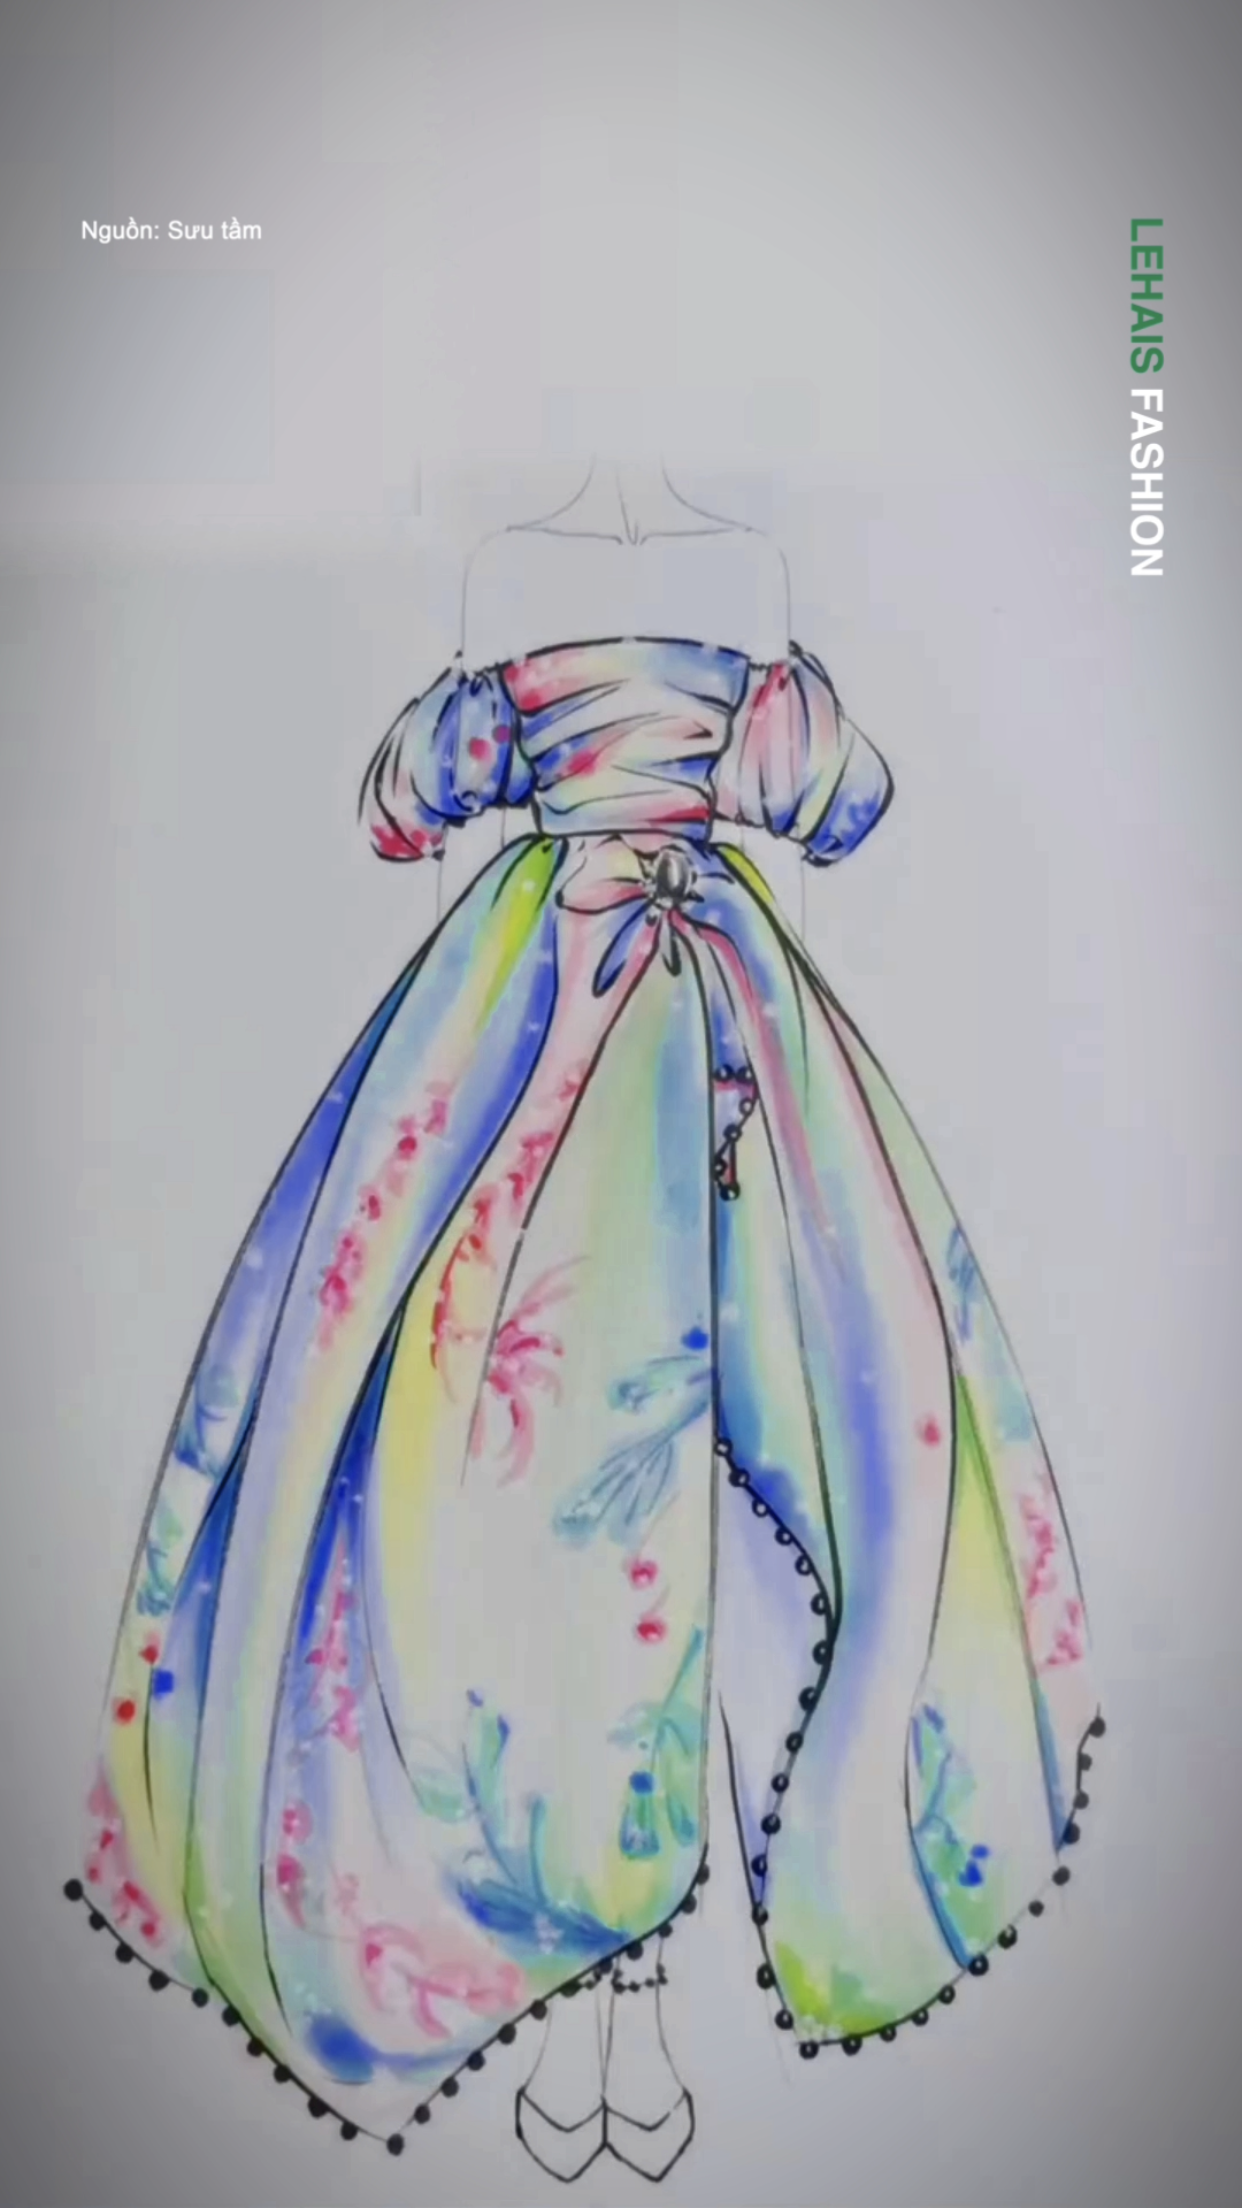 Vẽ thiết kế váy bằng bút cực đáng yêu